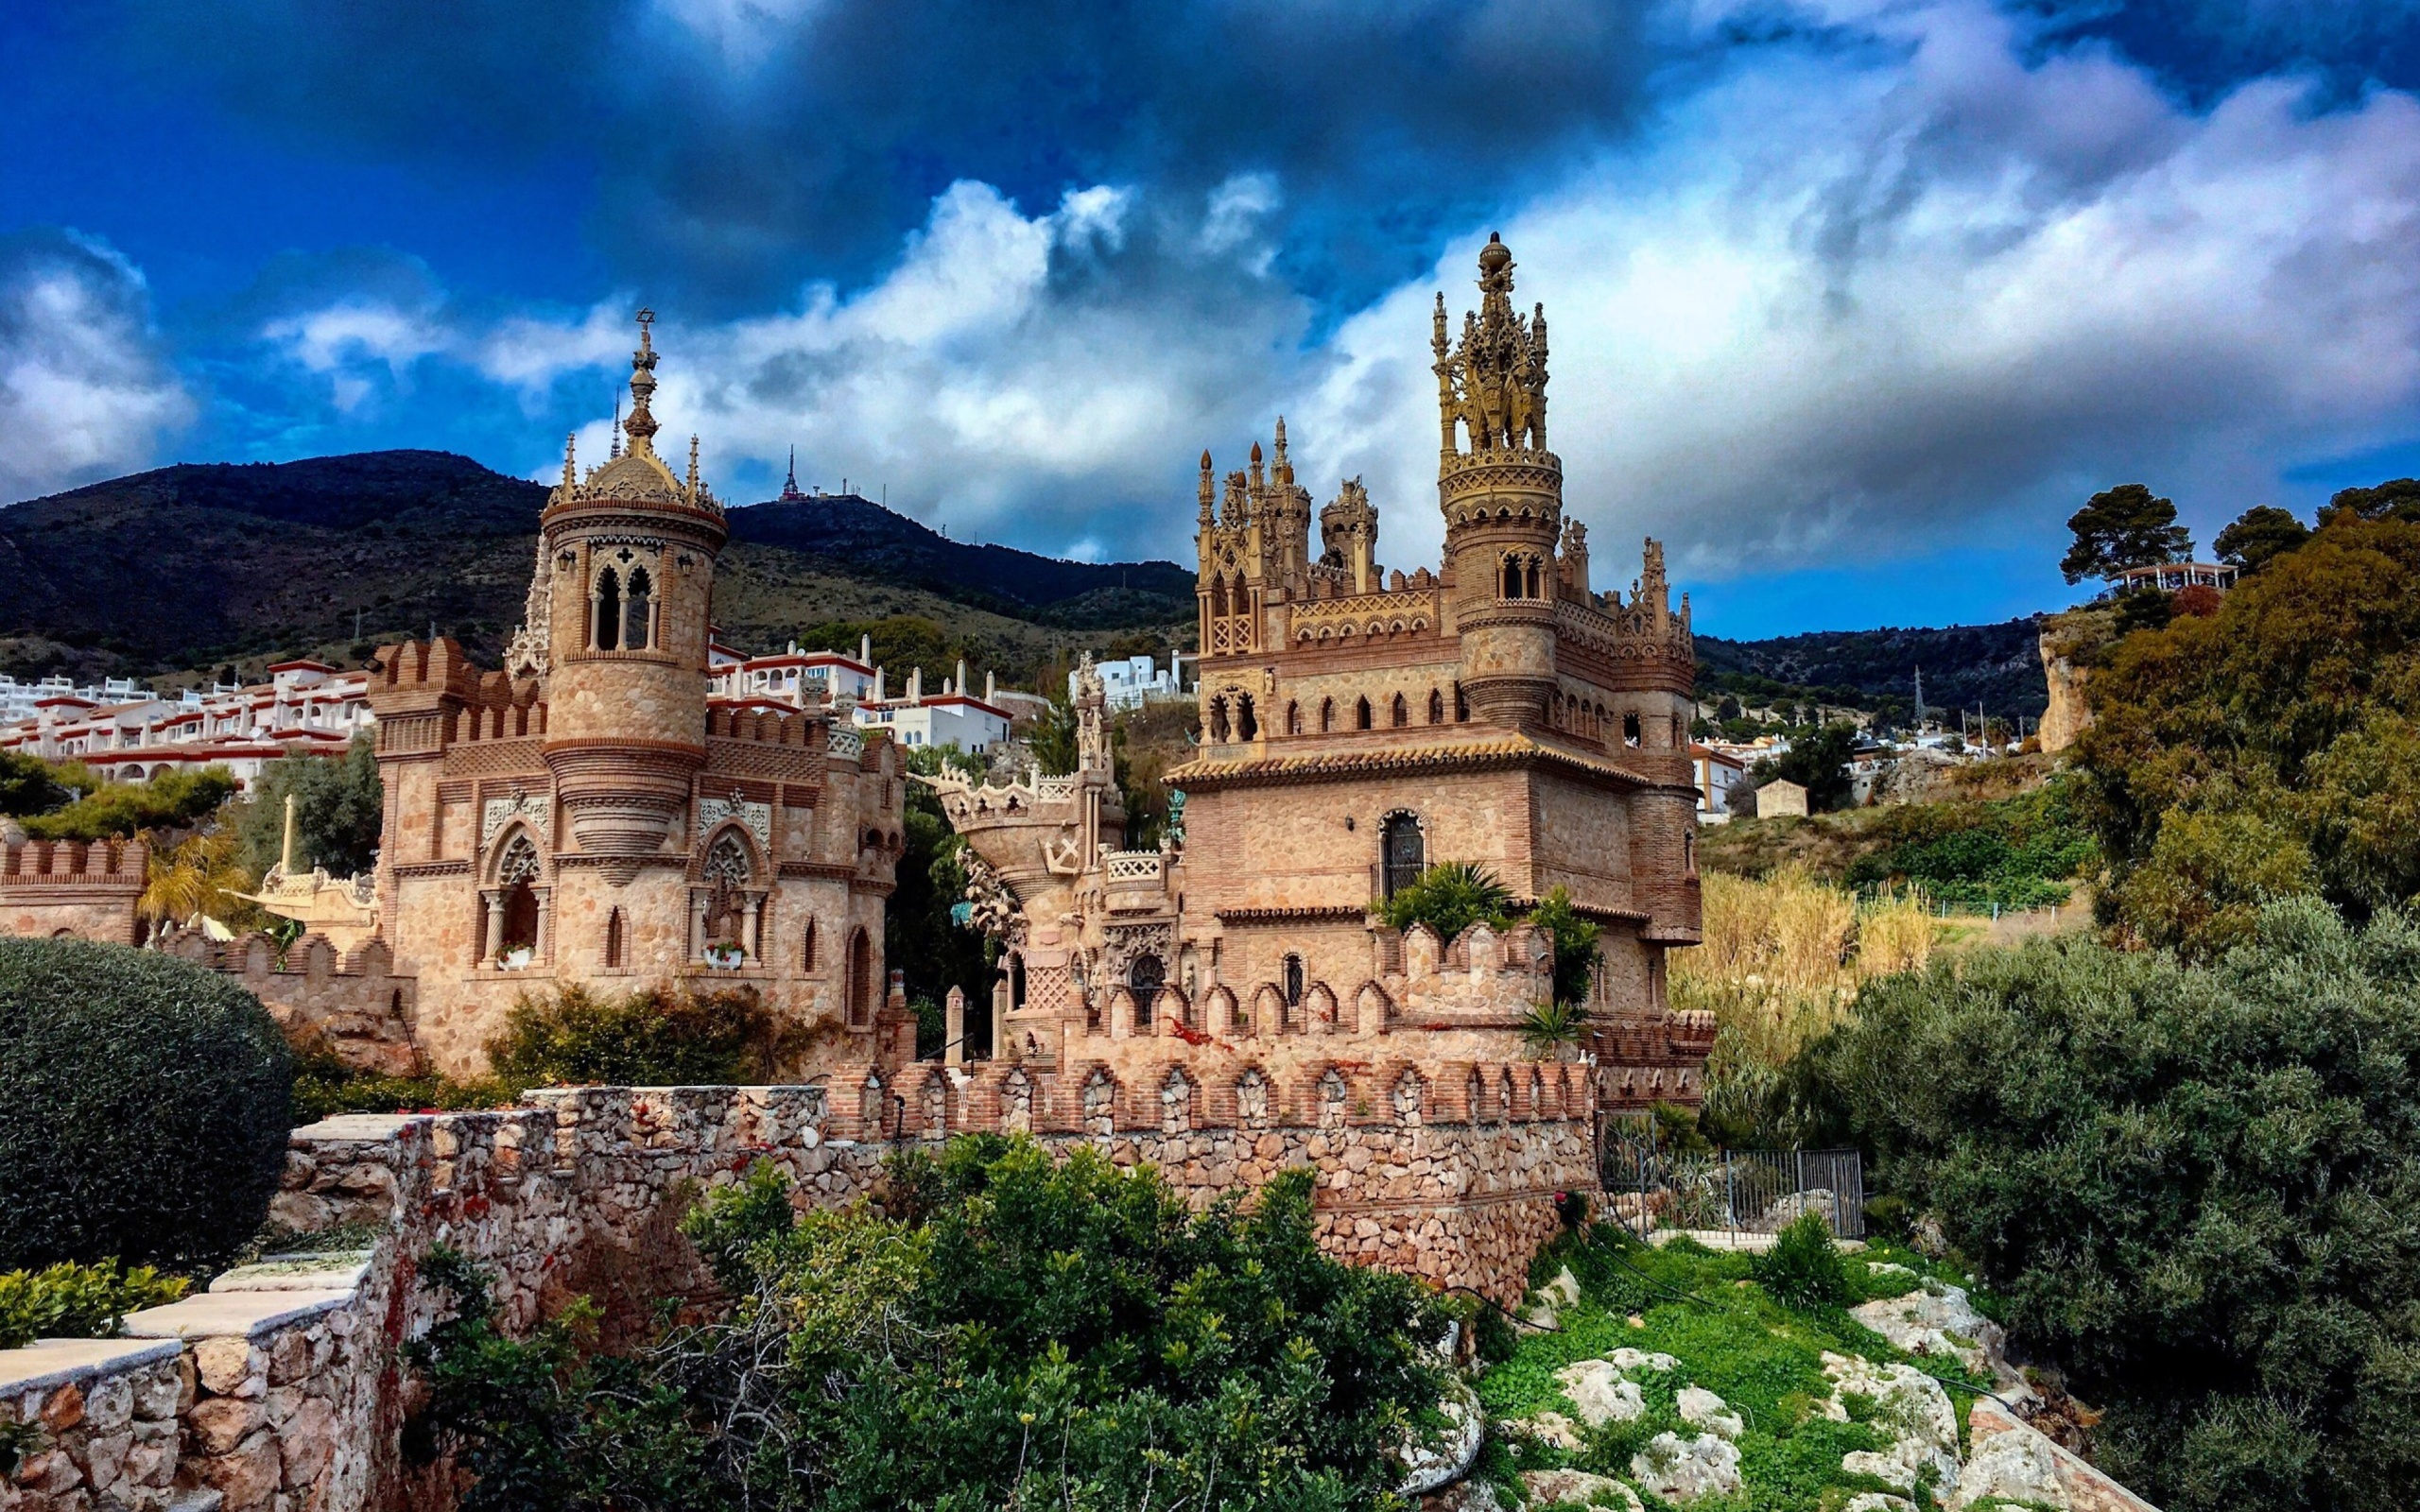 Castillo de Colomares in Spain Benalmadena screenshot #1 2560x1600